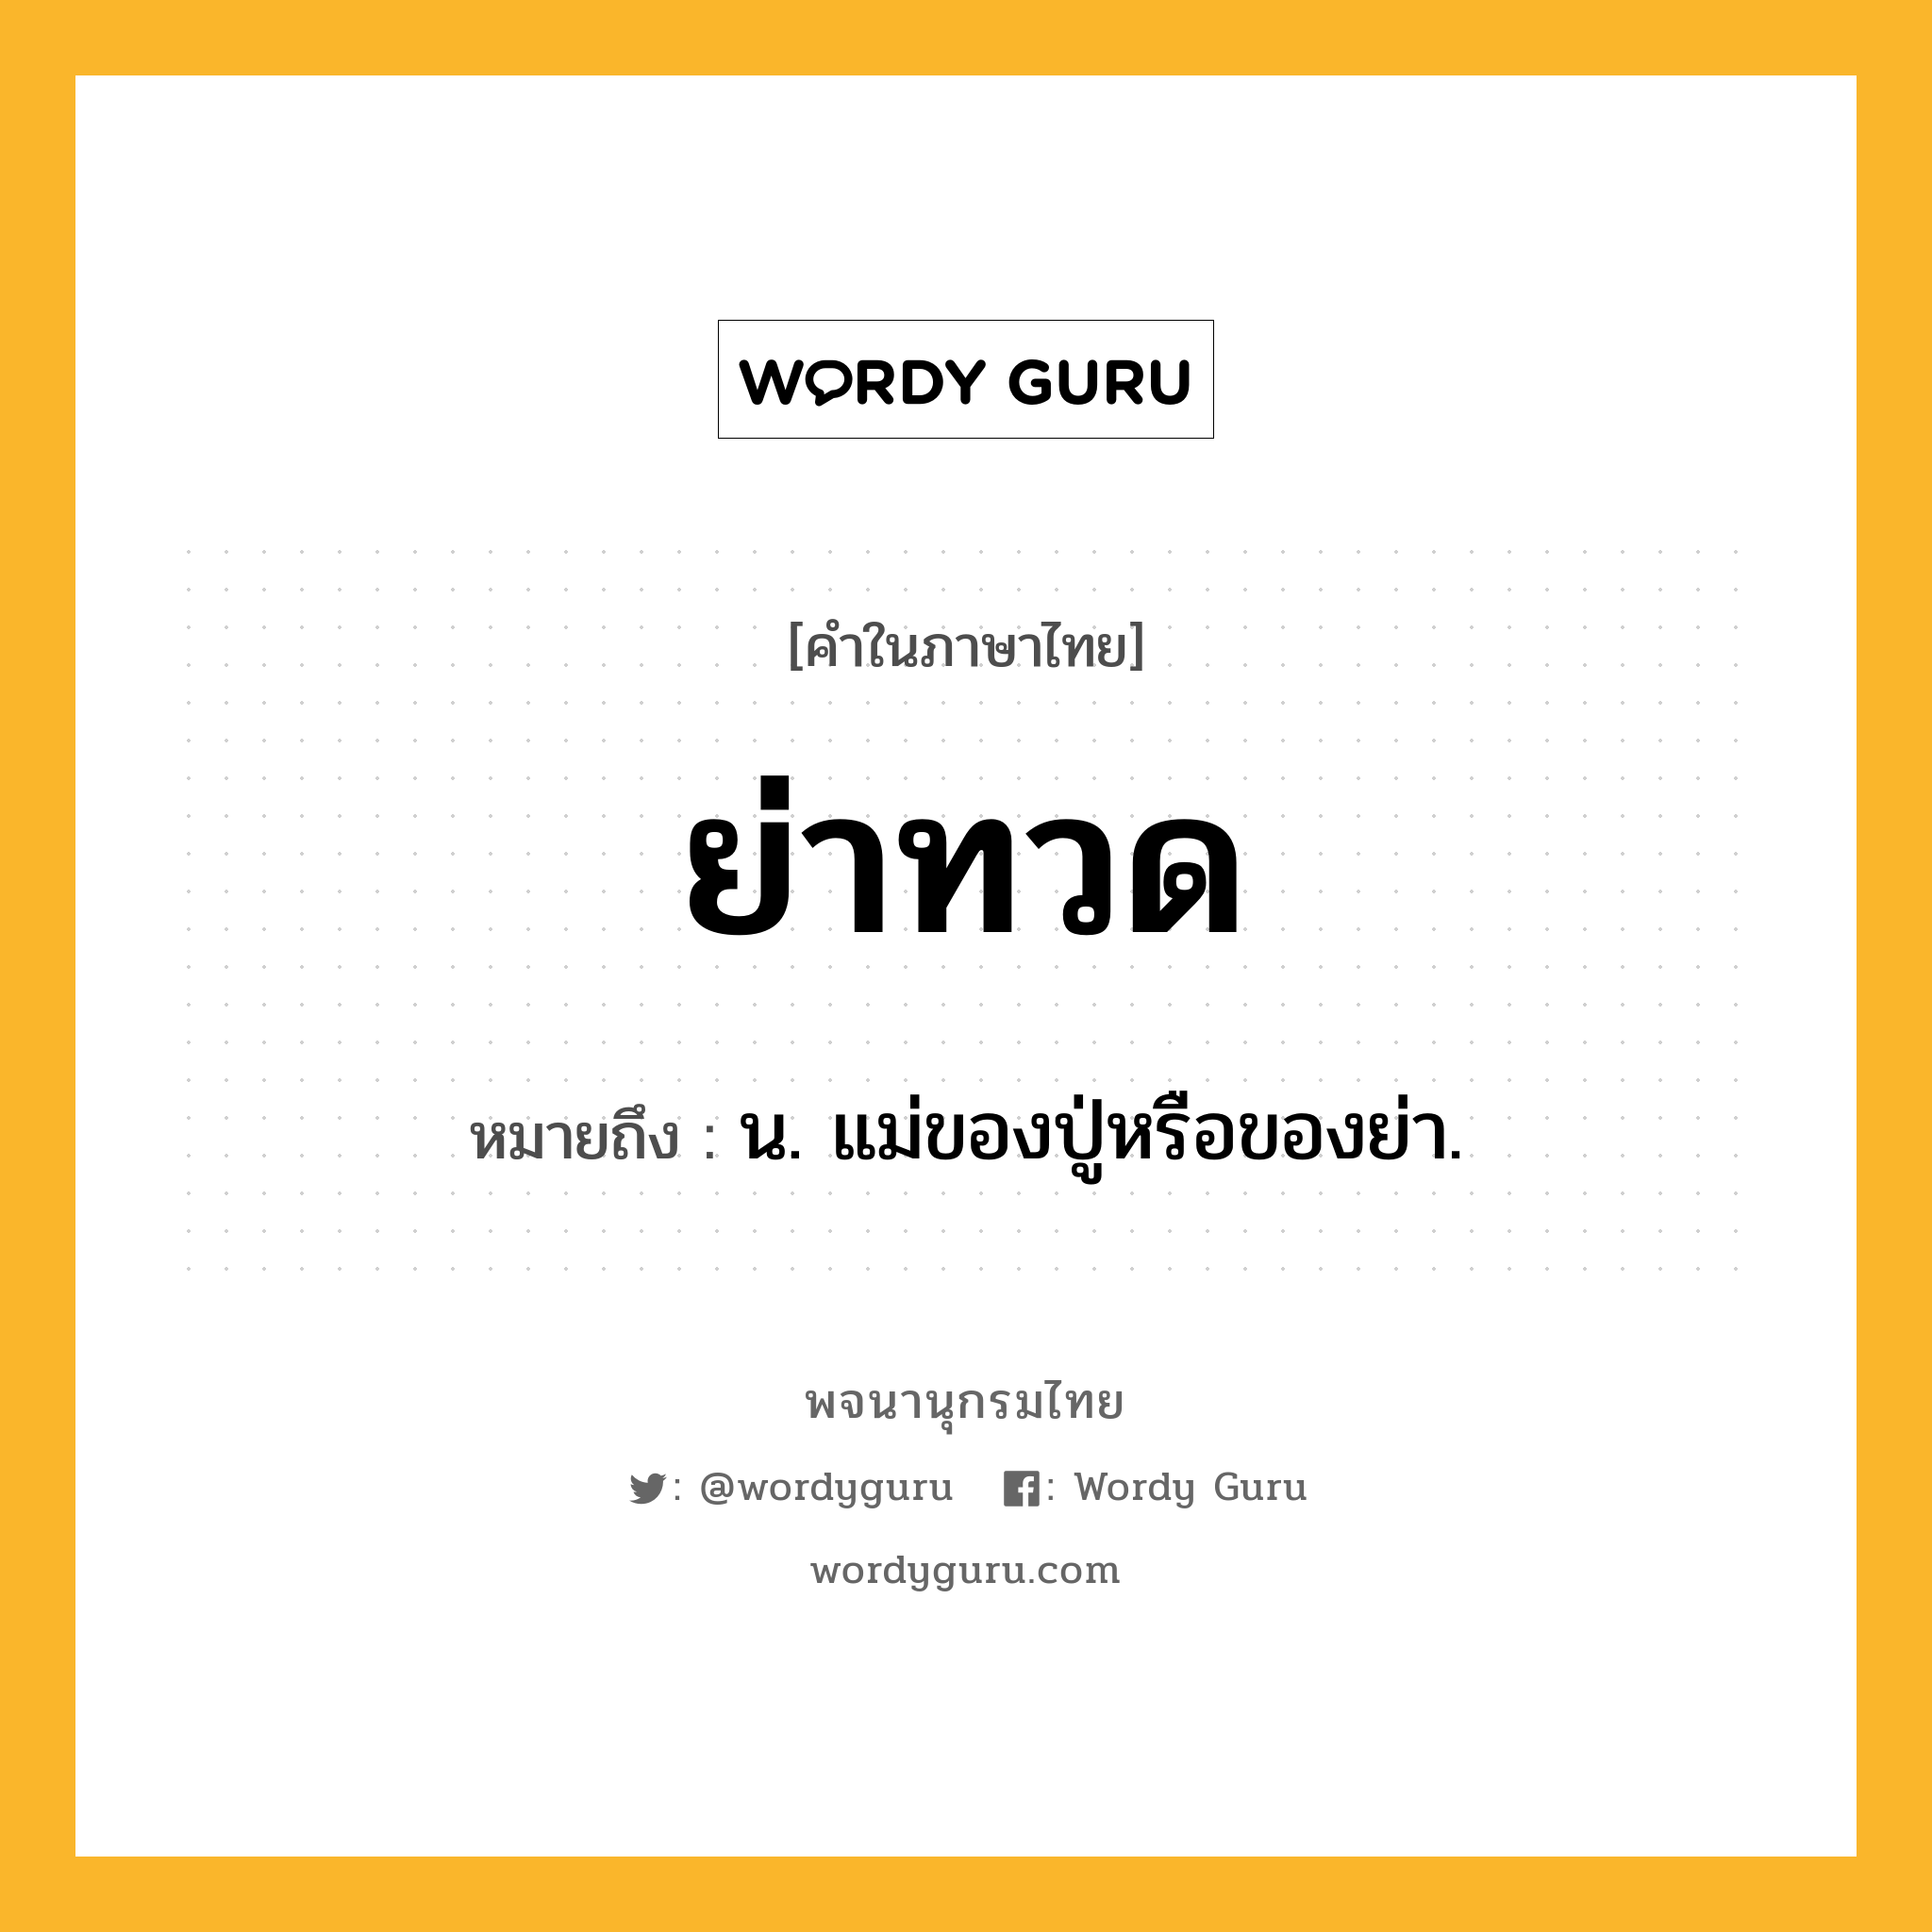 ย่าทวด หมายถึงอะไร?, คำในภาษาไทย ย่าทวด หมายถึง น. แม่ของปู่หรือของย่า.